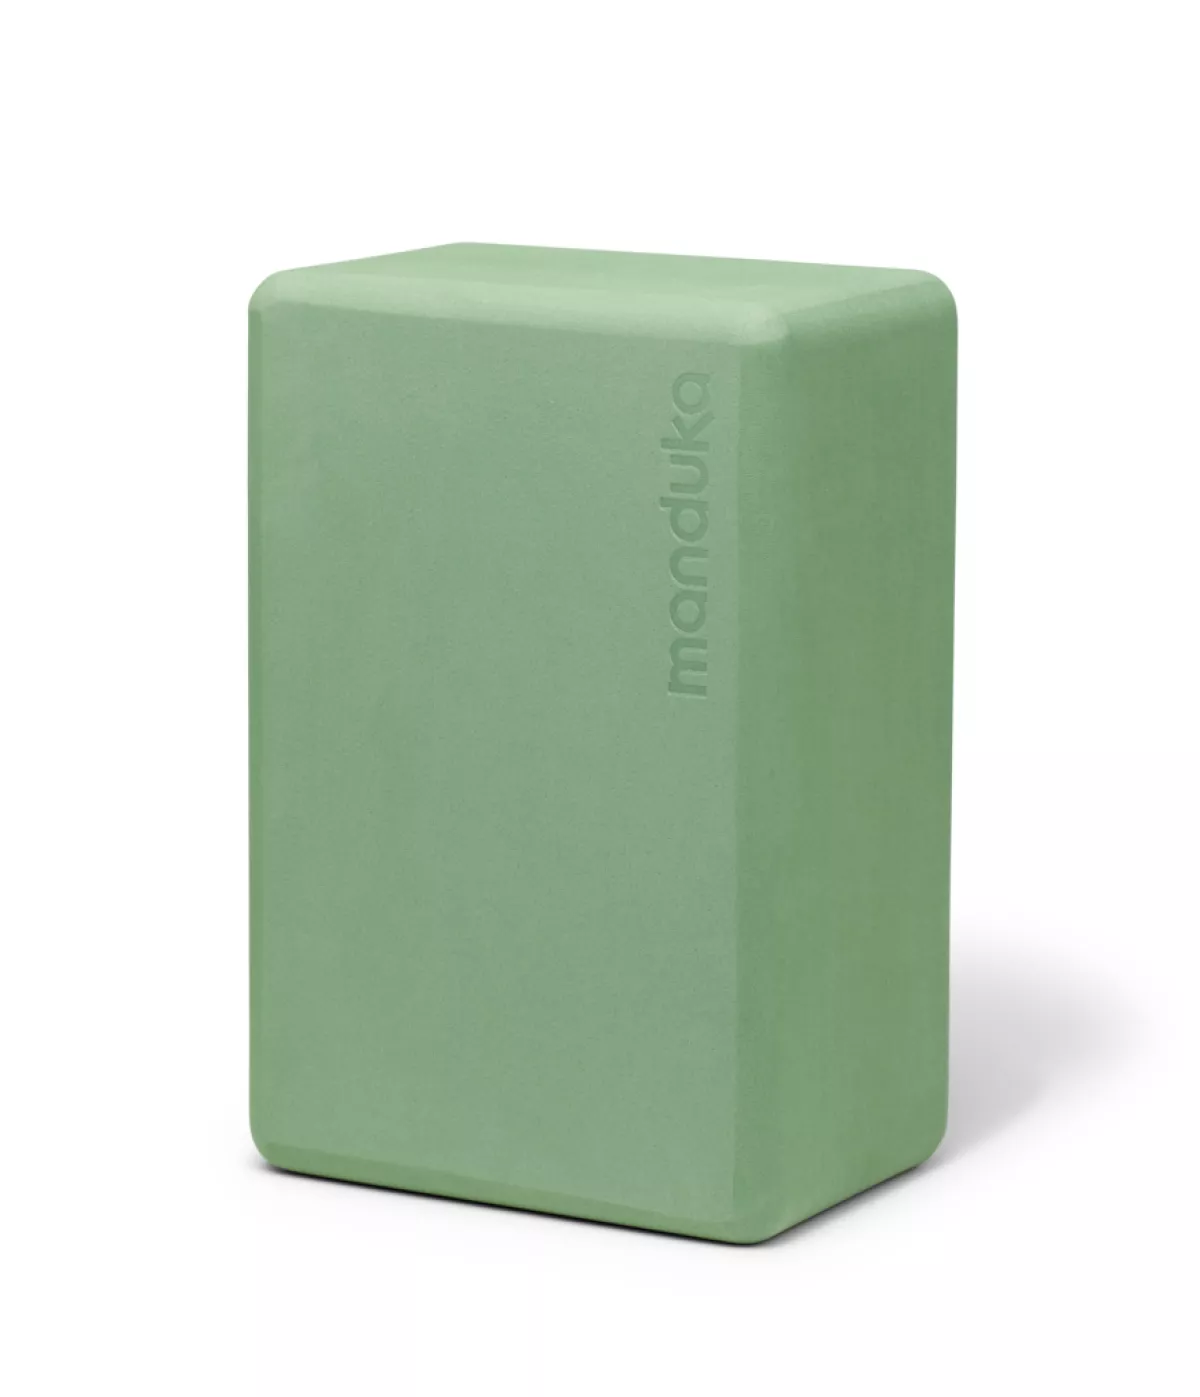 #1 - Manduka Recycled Foam Yoga Blok - Leaf Green